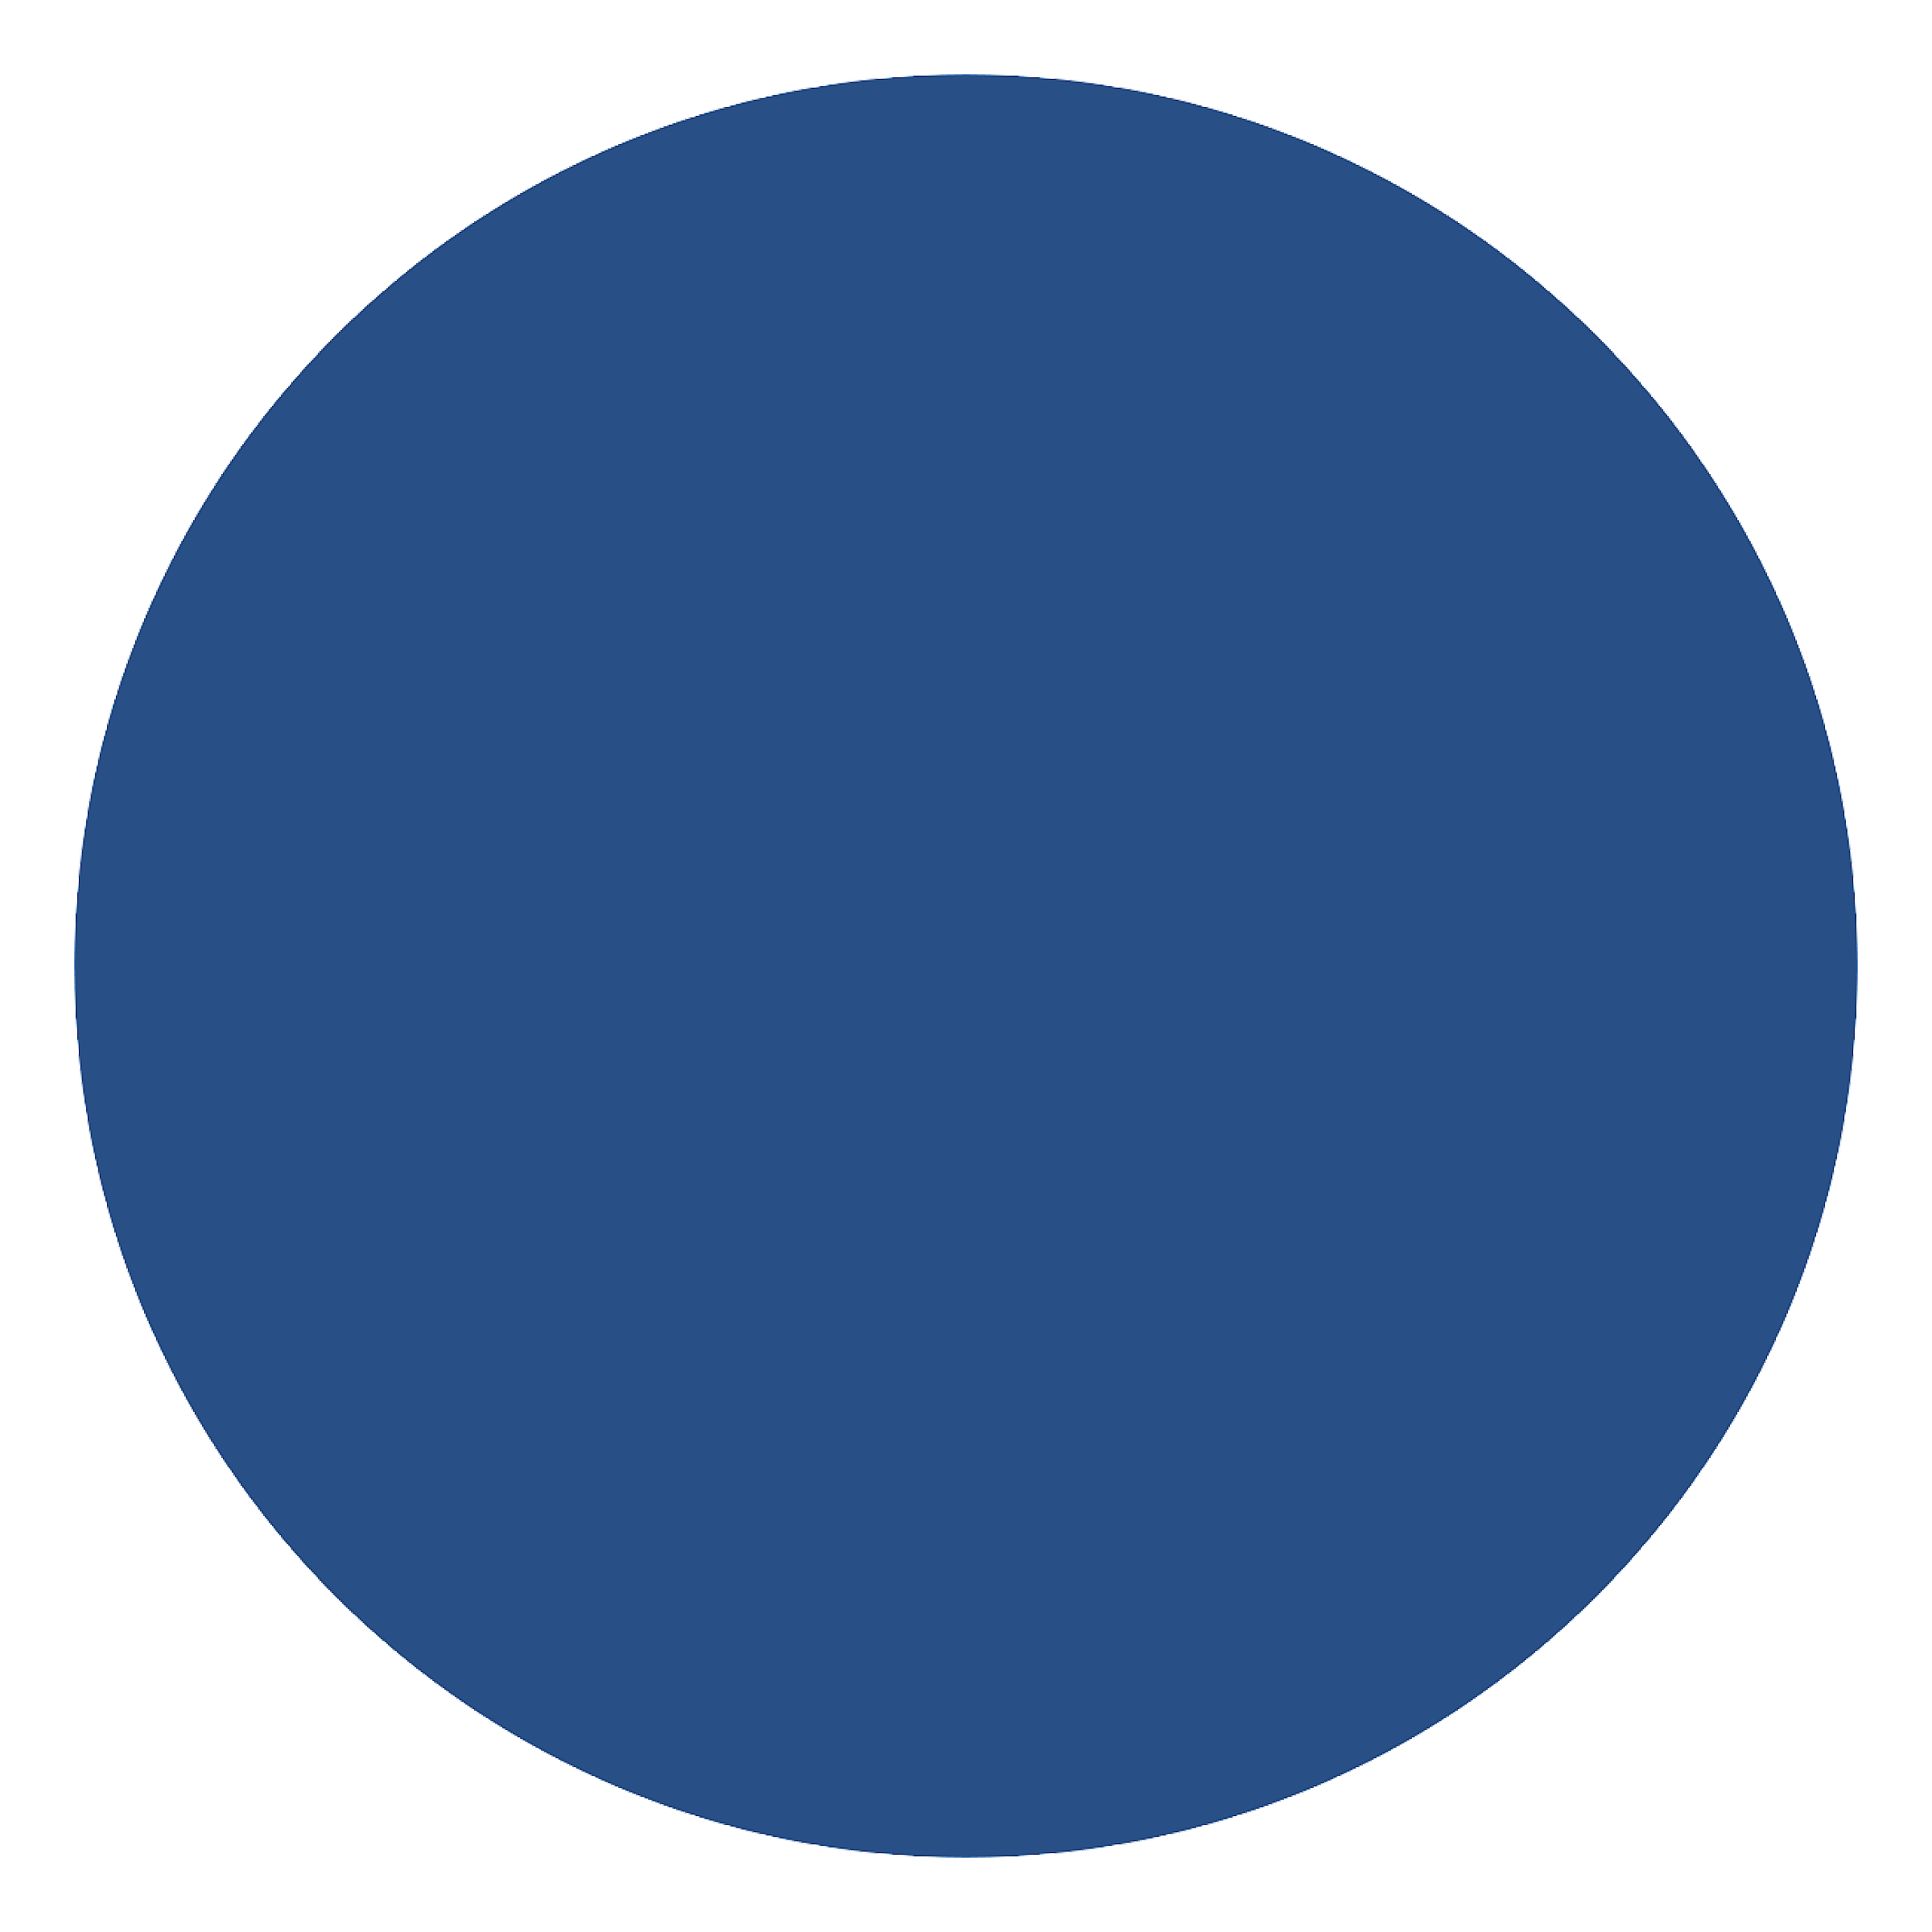 Primary blue